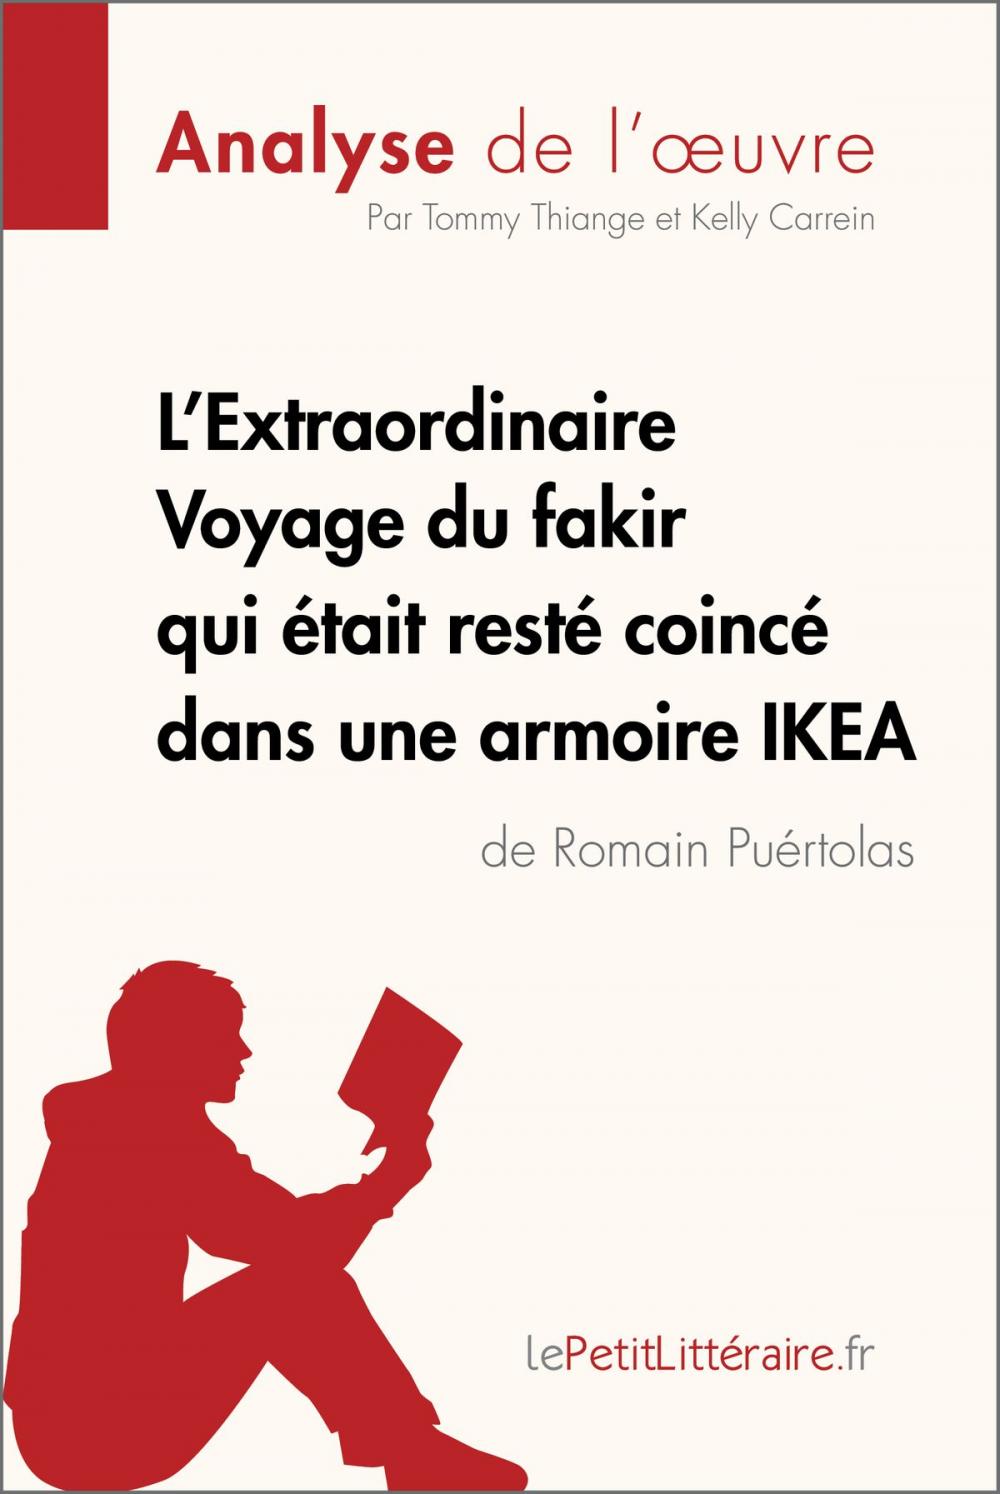 Big bigCover of L'Extraordinaire Voyage du fakir qui était resté coincé dans une armoire IKEA de Romain Puértolas (Analyse de l'oeuvre)